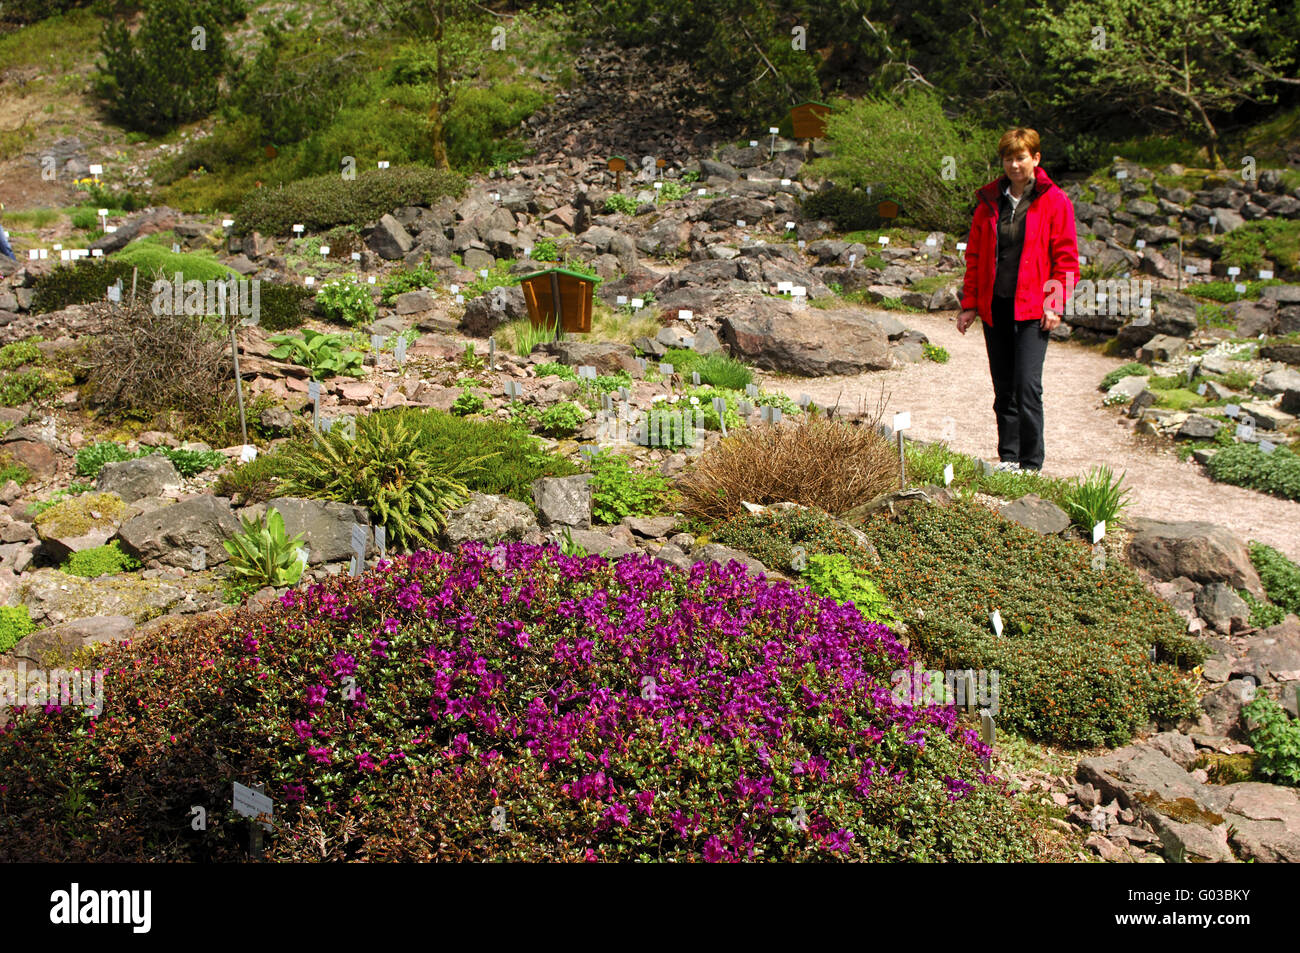 Visitor in the Rennsteig alpine botanical garden Stock Photo